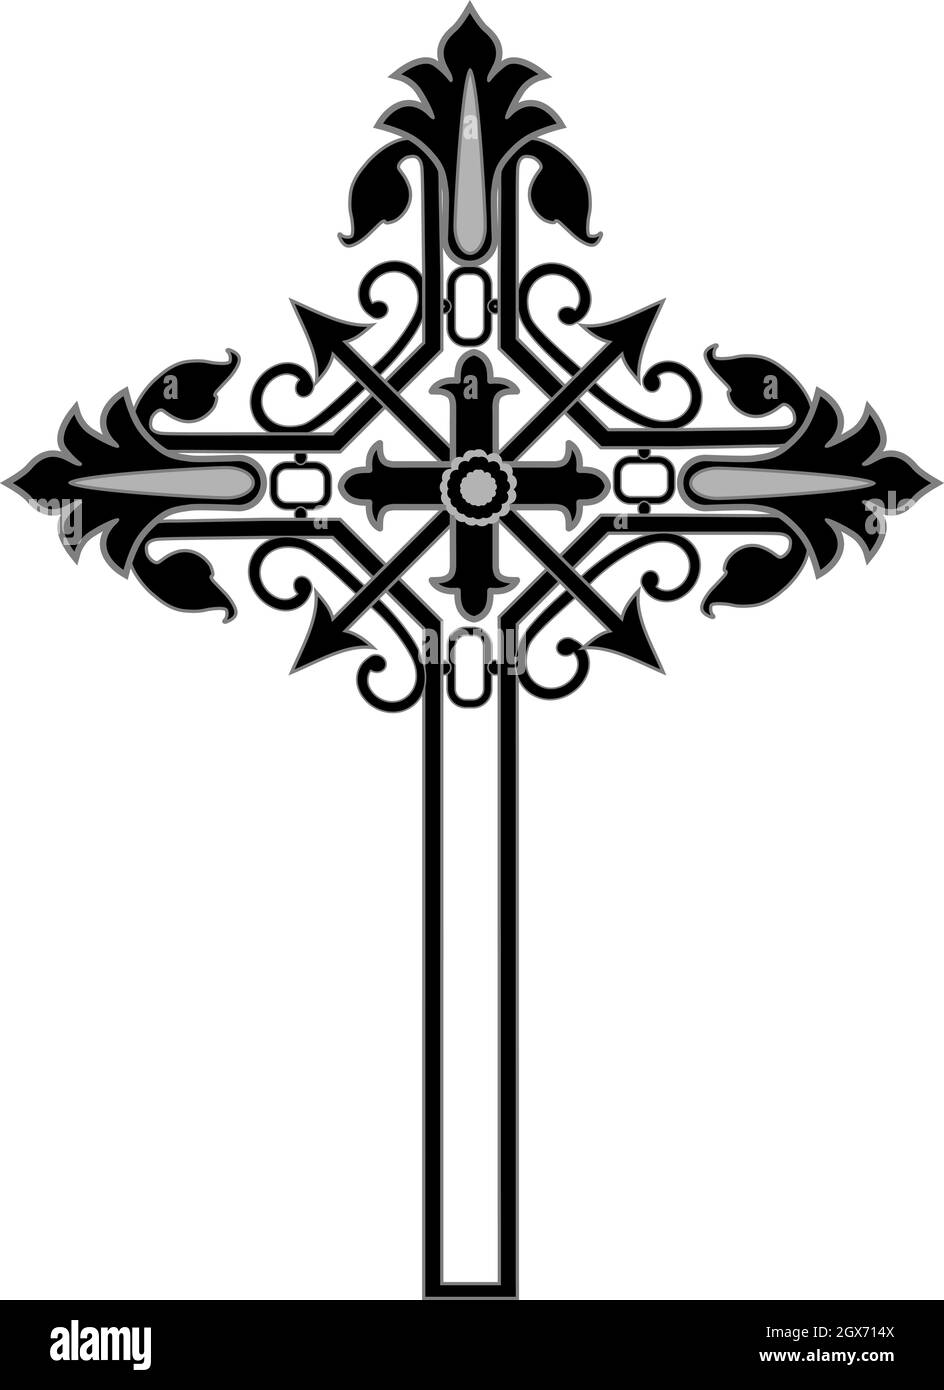 Croix de style de métal chrétien gothique médiéval - Illustration vectorielle Illustration de Vecteur